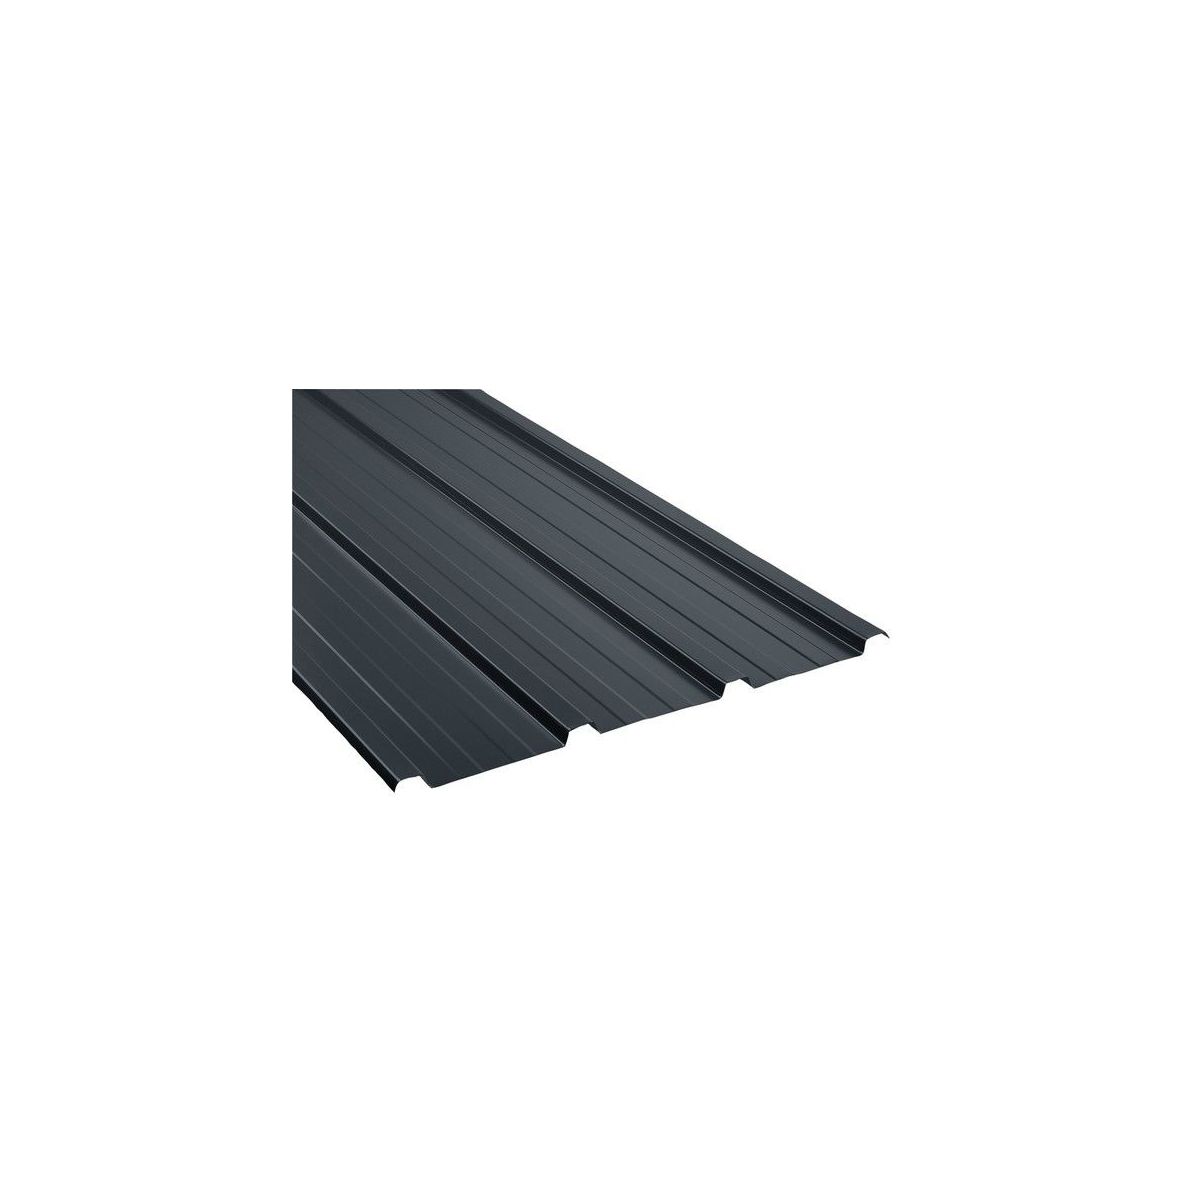 Tôle de toiture acier galvanisé - Ral 7012 (gris basalte) - Longueur 3m